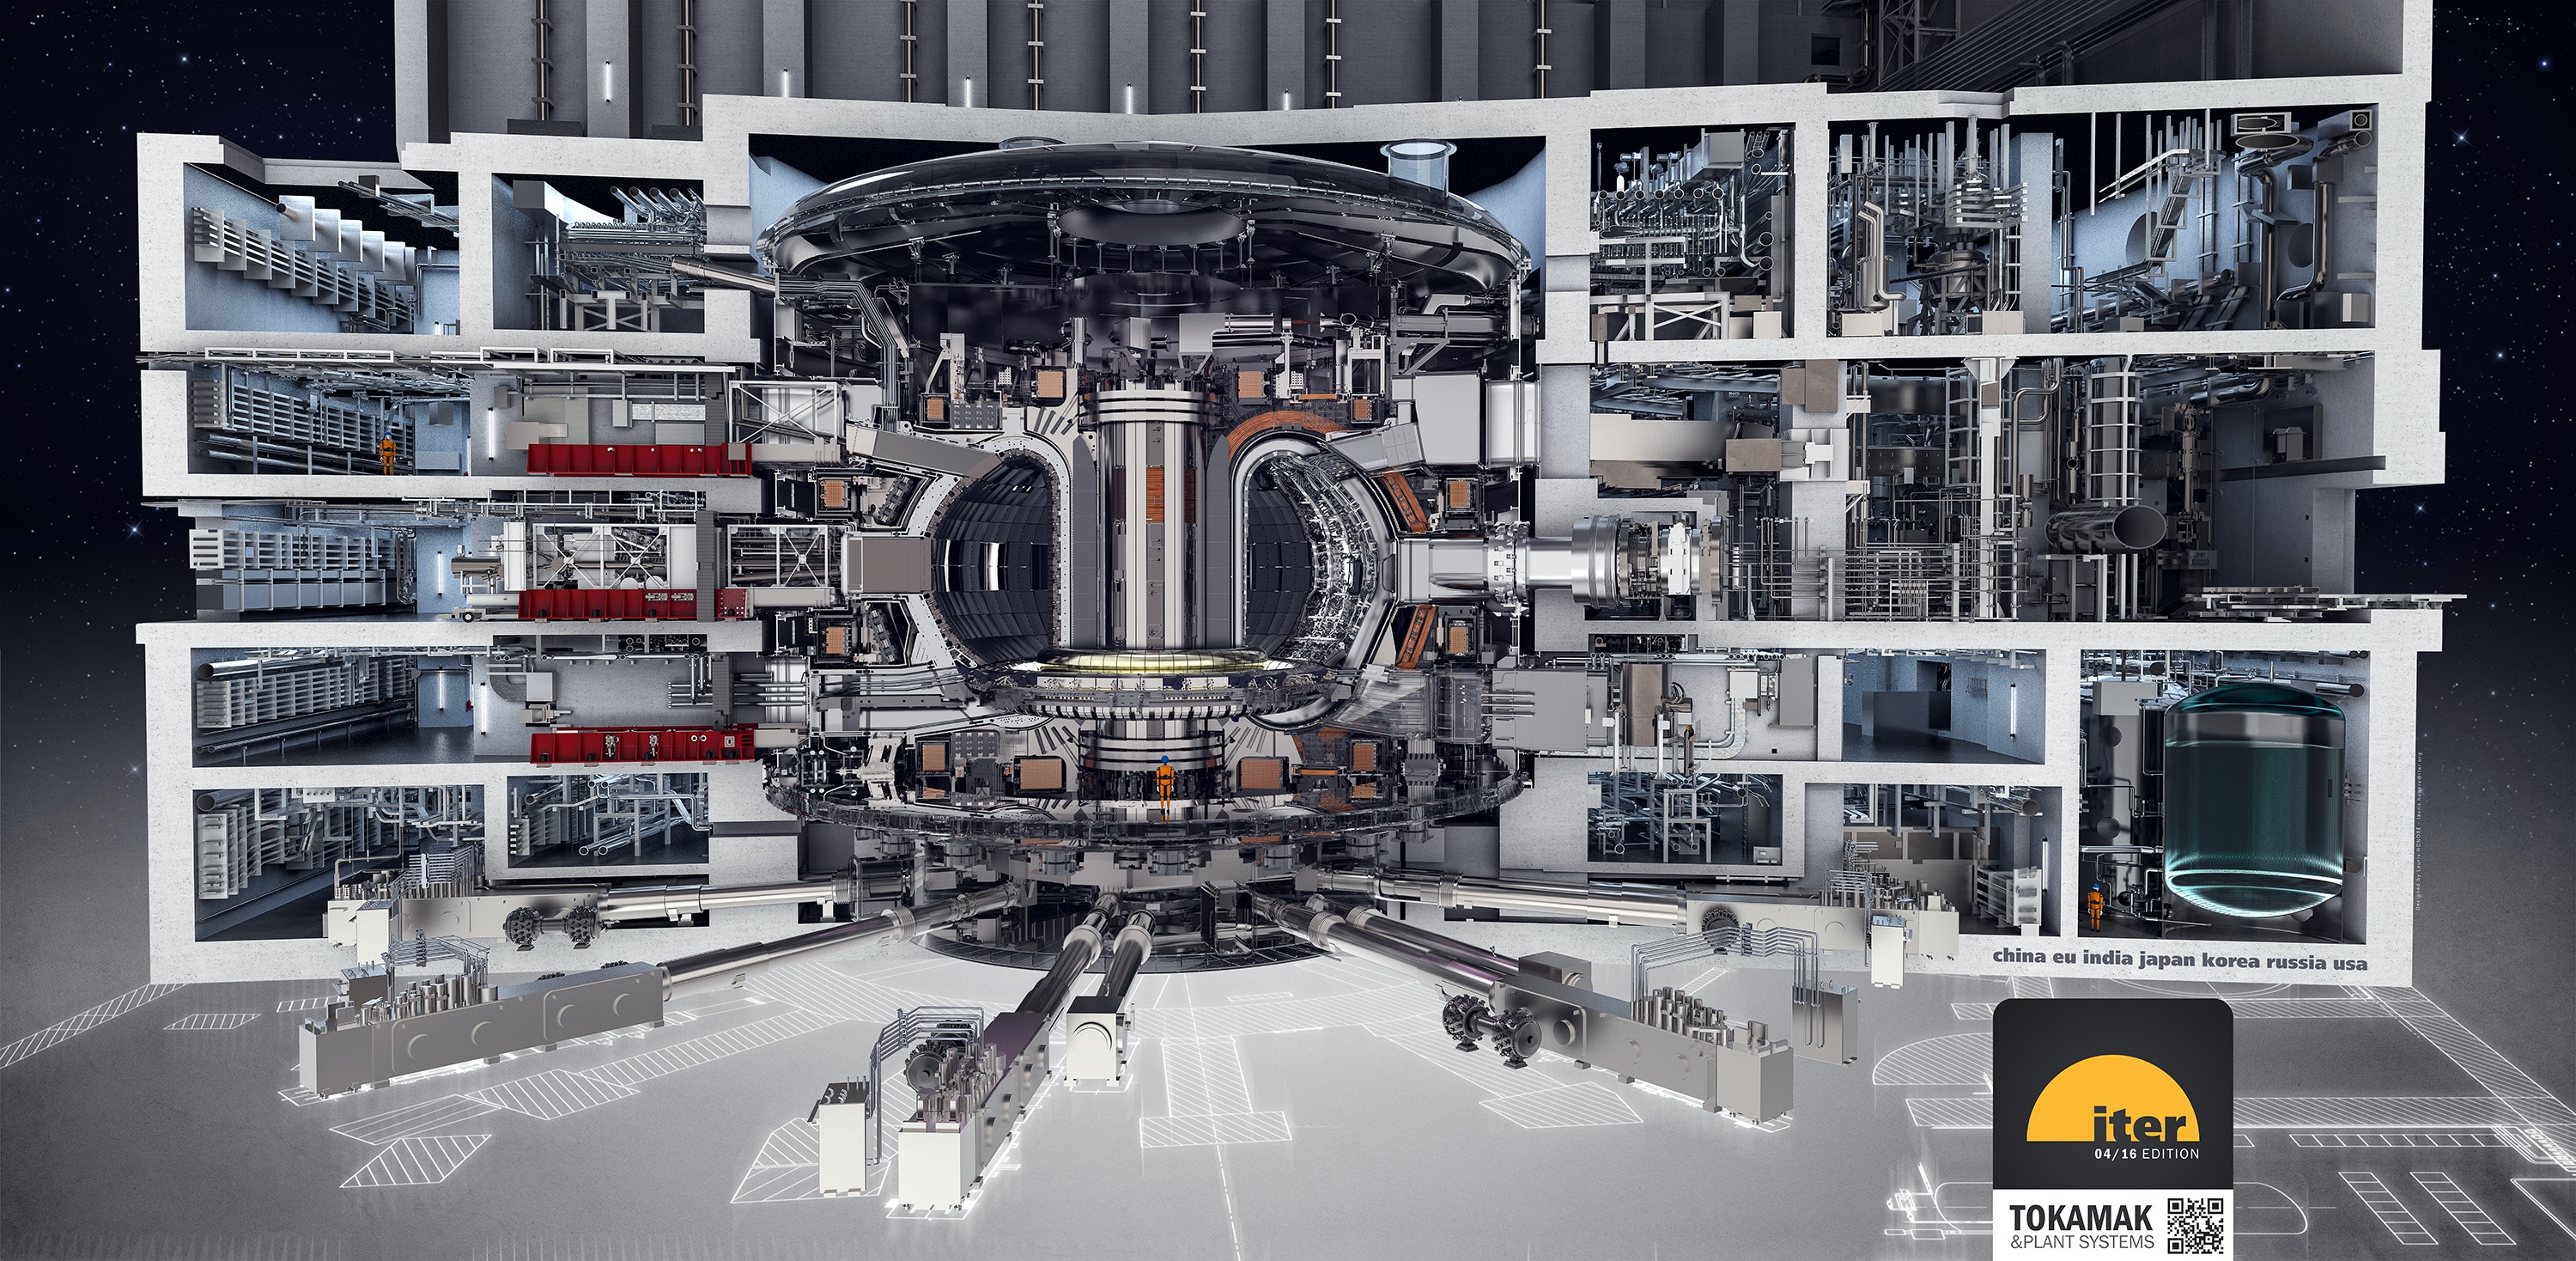 Eine Zeichnung eines Reaktors mit vielen Räumen, die ihn umgeben.